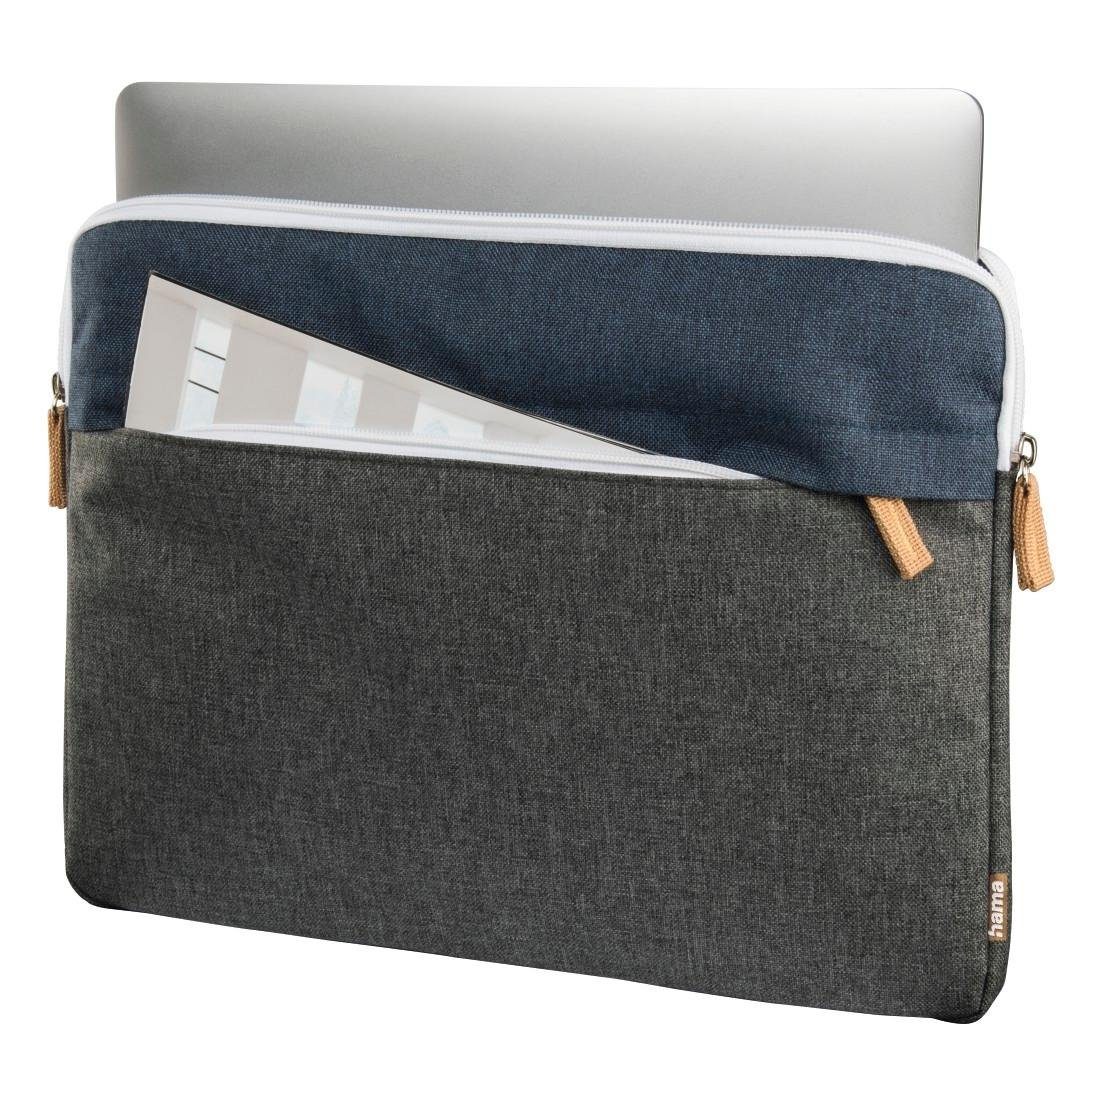 Laptoptasche Laptop-Sleeve Marineblau/Dunkelgrau bis Florenz Hama 13,3" Tasche cm 34